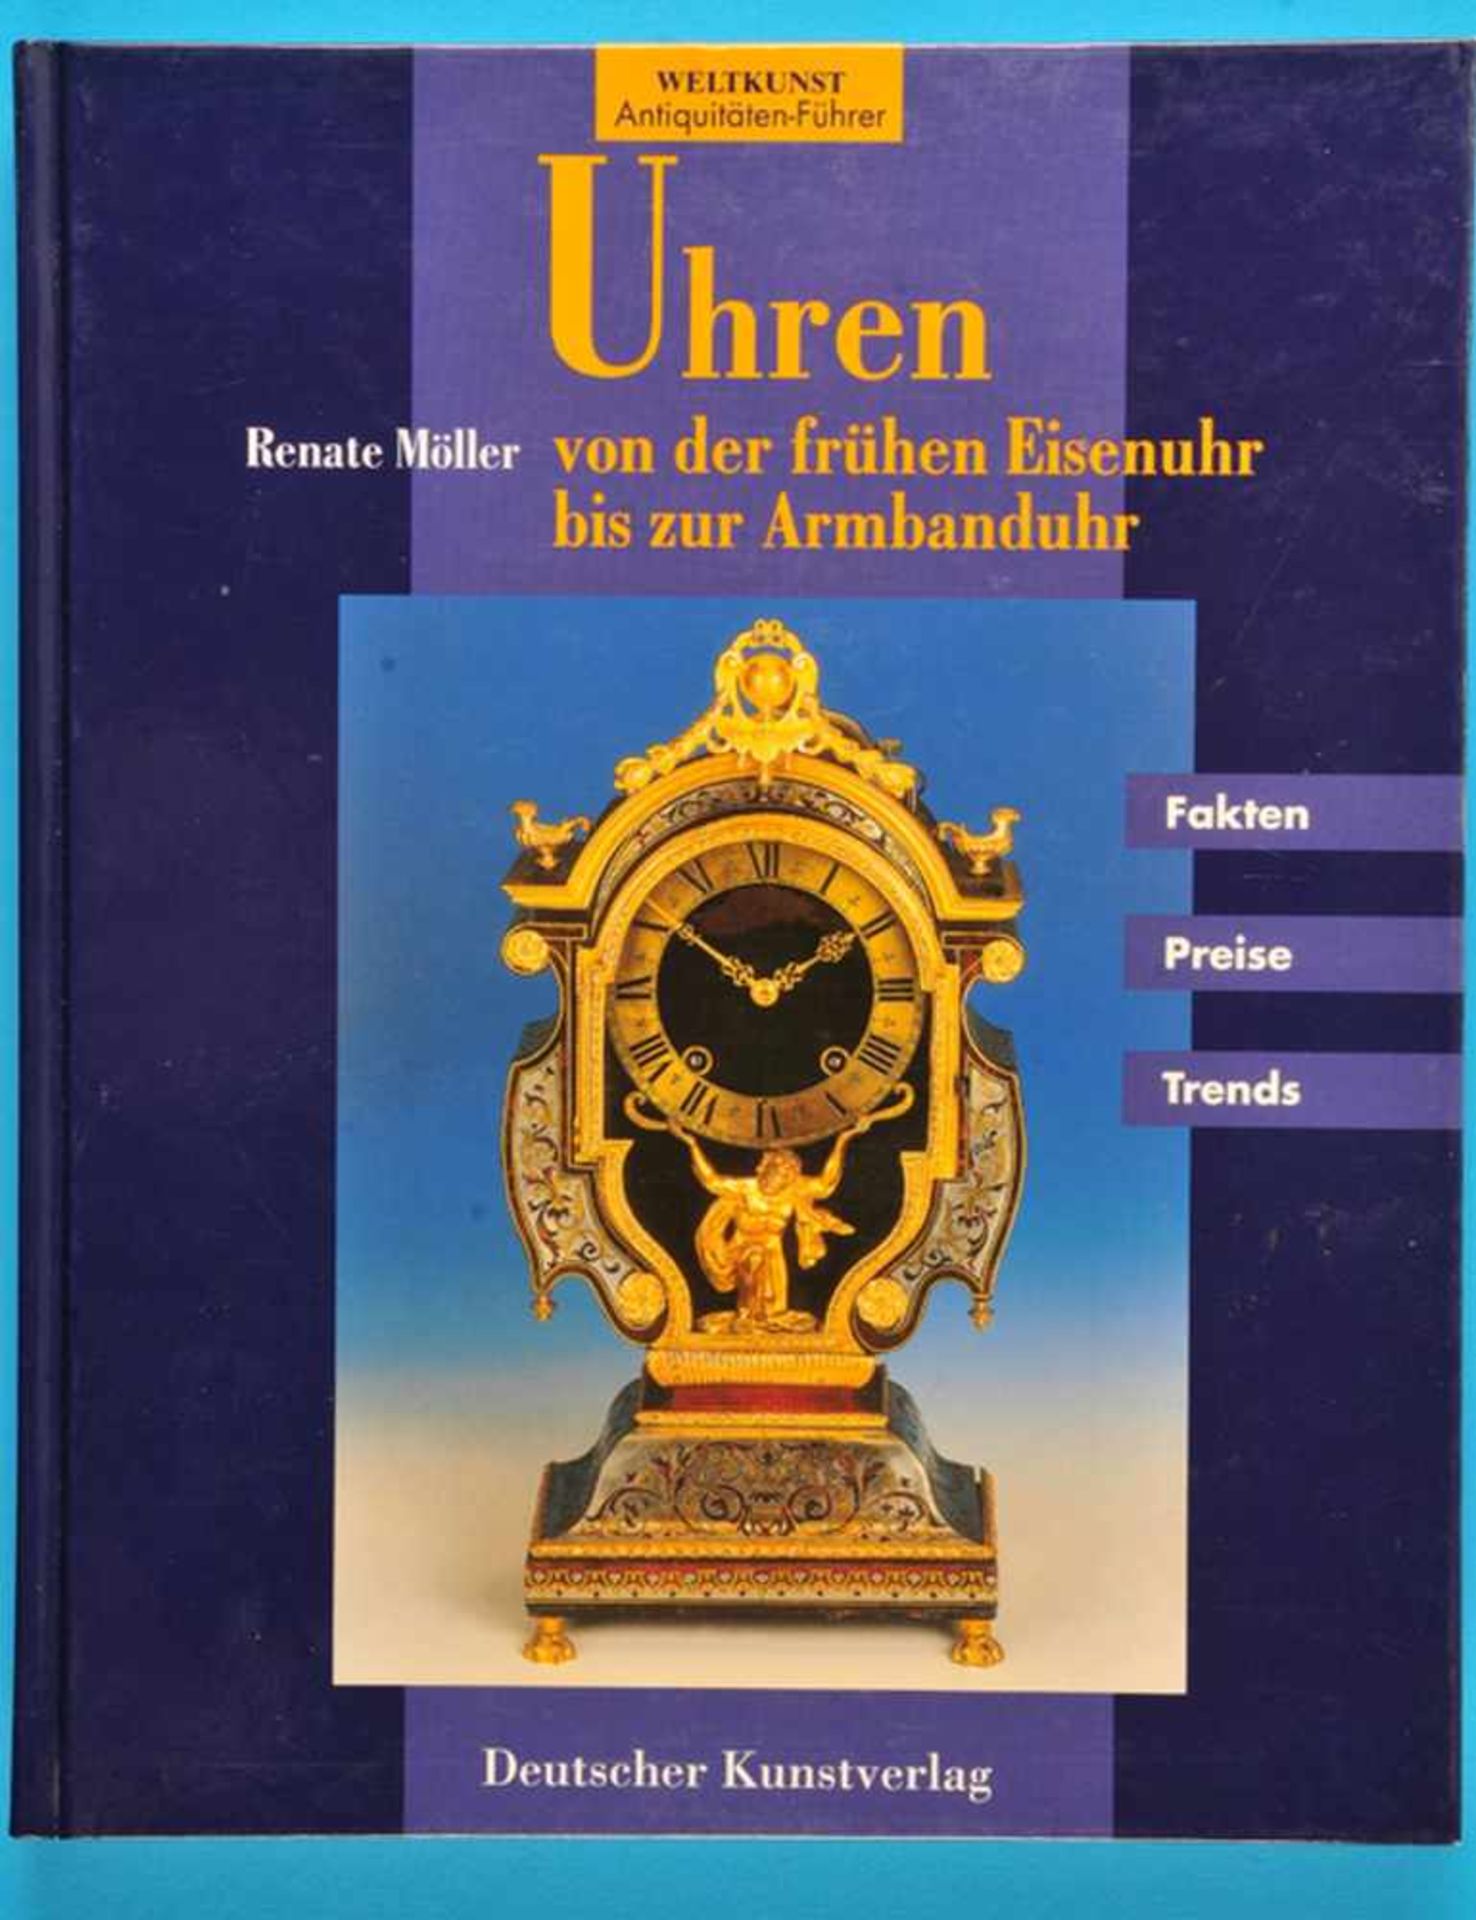 Renate Möller, Uhren – von der frühen Eisenuhr bis zur Armbanduhr, Fakten, Preise, Trends, 1996, 162